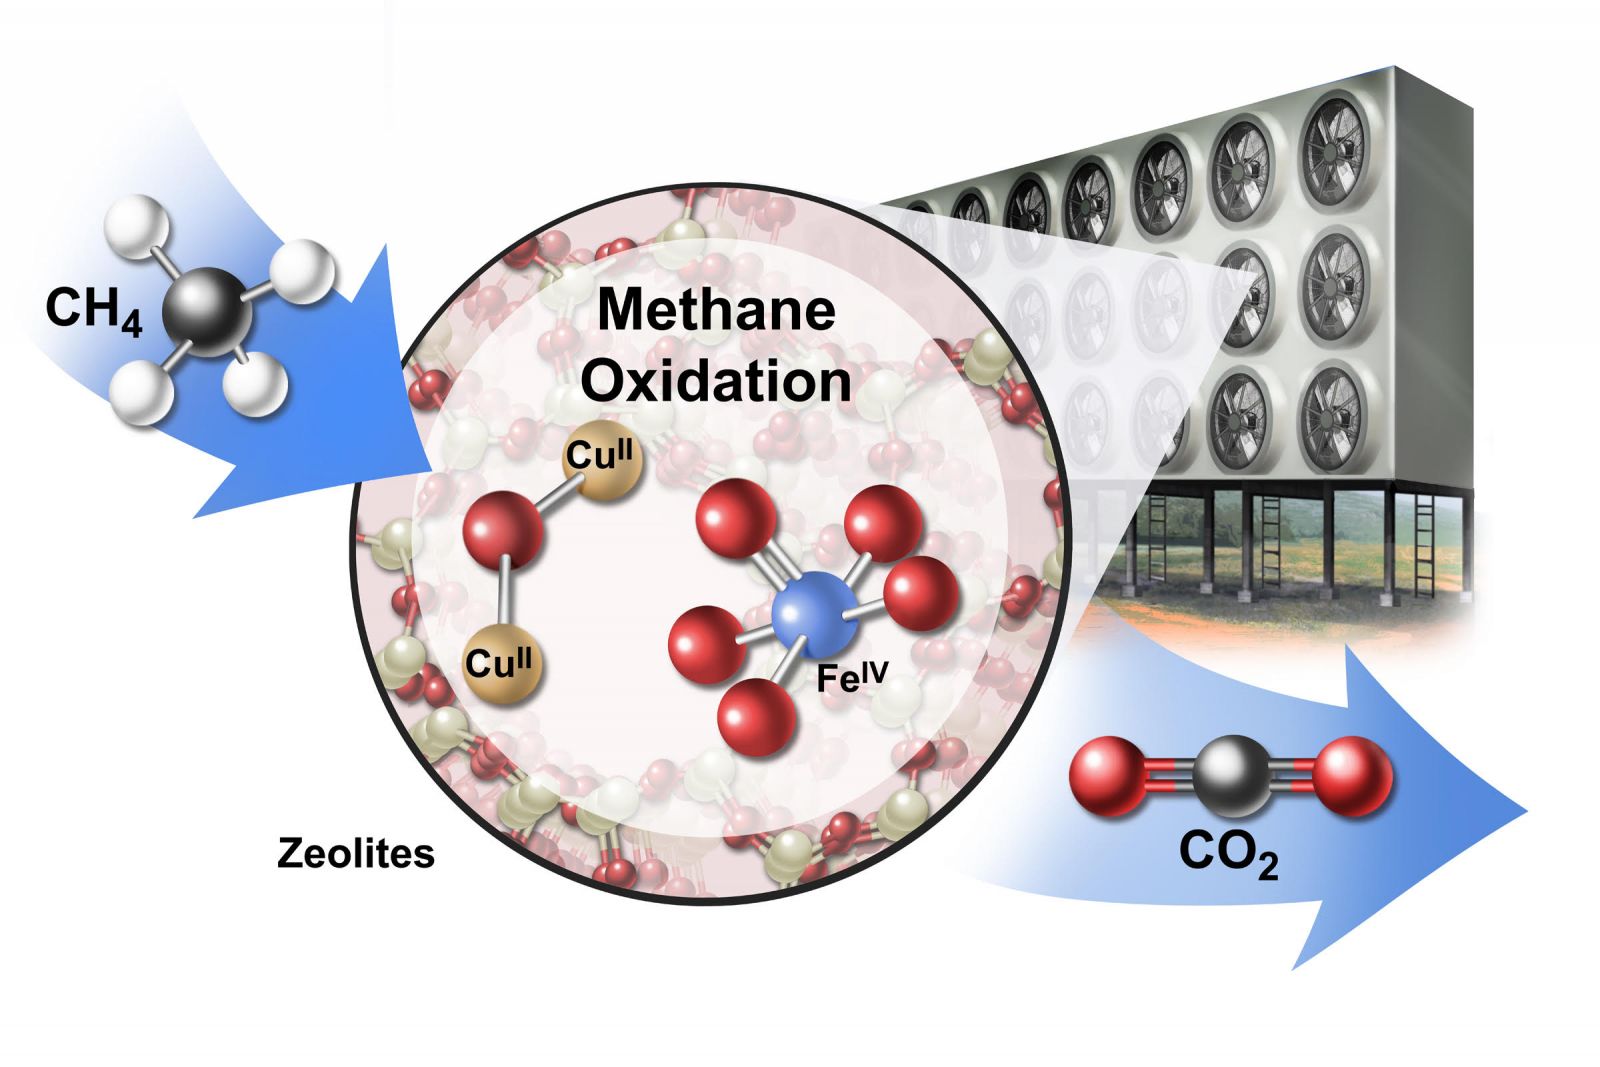 Representación conceptual de una matriz industrial para convertir metano (CH 4 ) en dióxido de carbono (CO2 ) utilizando materiales catalíticos llamados zeolitas (CU II y FE IV ). (Crédito de la imagen: Jackson, et al. 2019 Nature Sustainability / Artista: Stan Coffman)